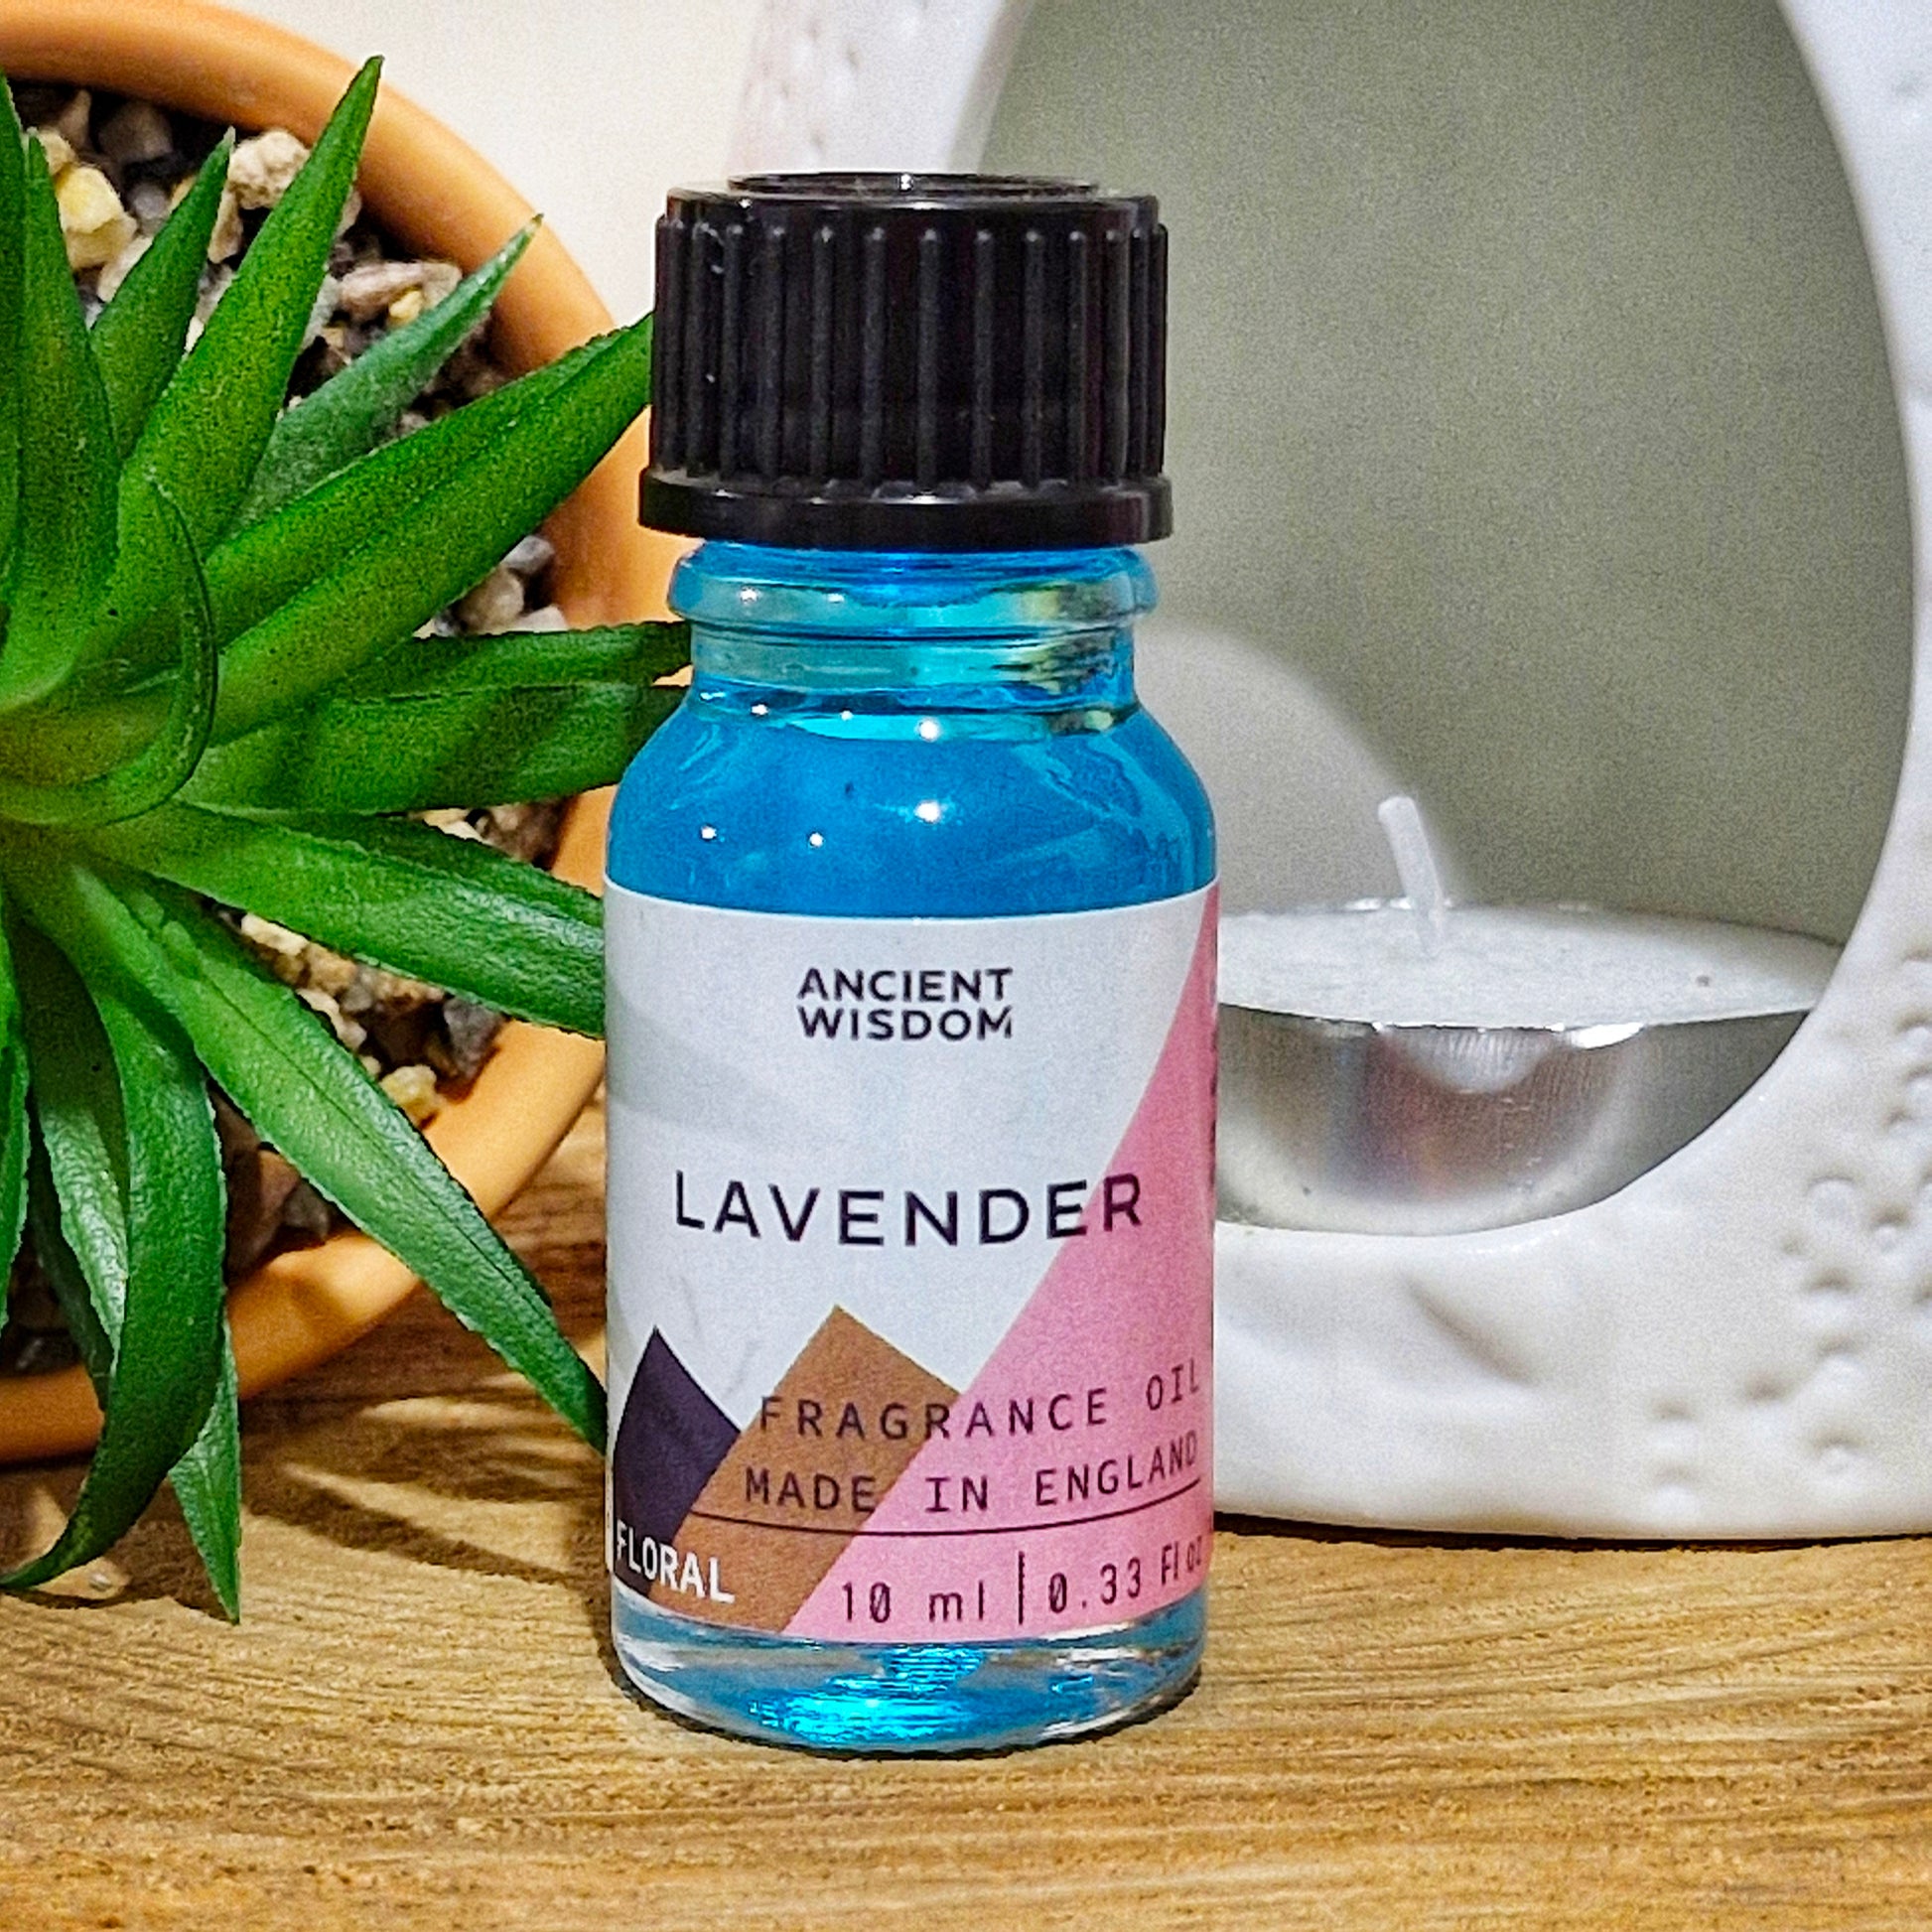 A 10ml bottle of lavender fragrance oil 